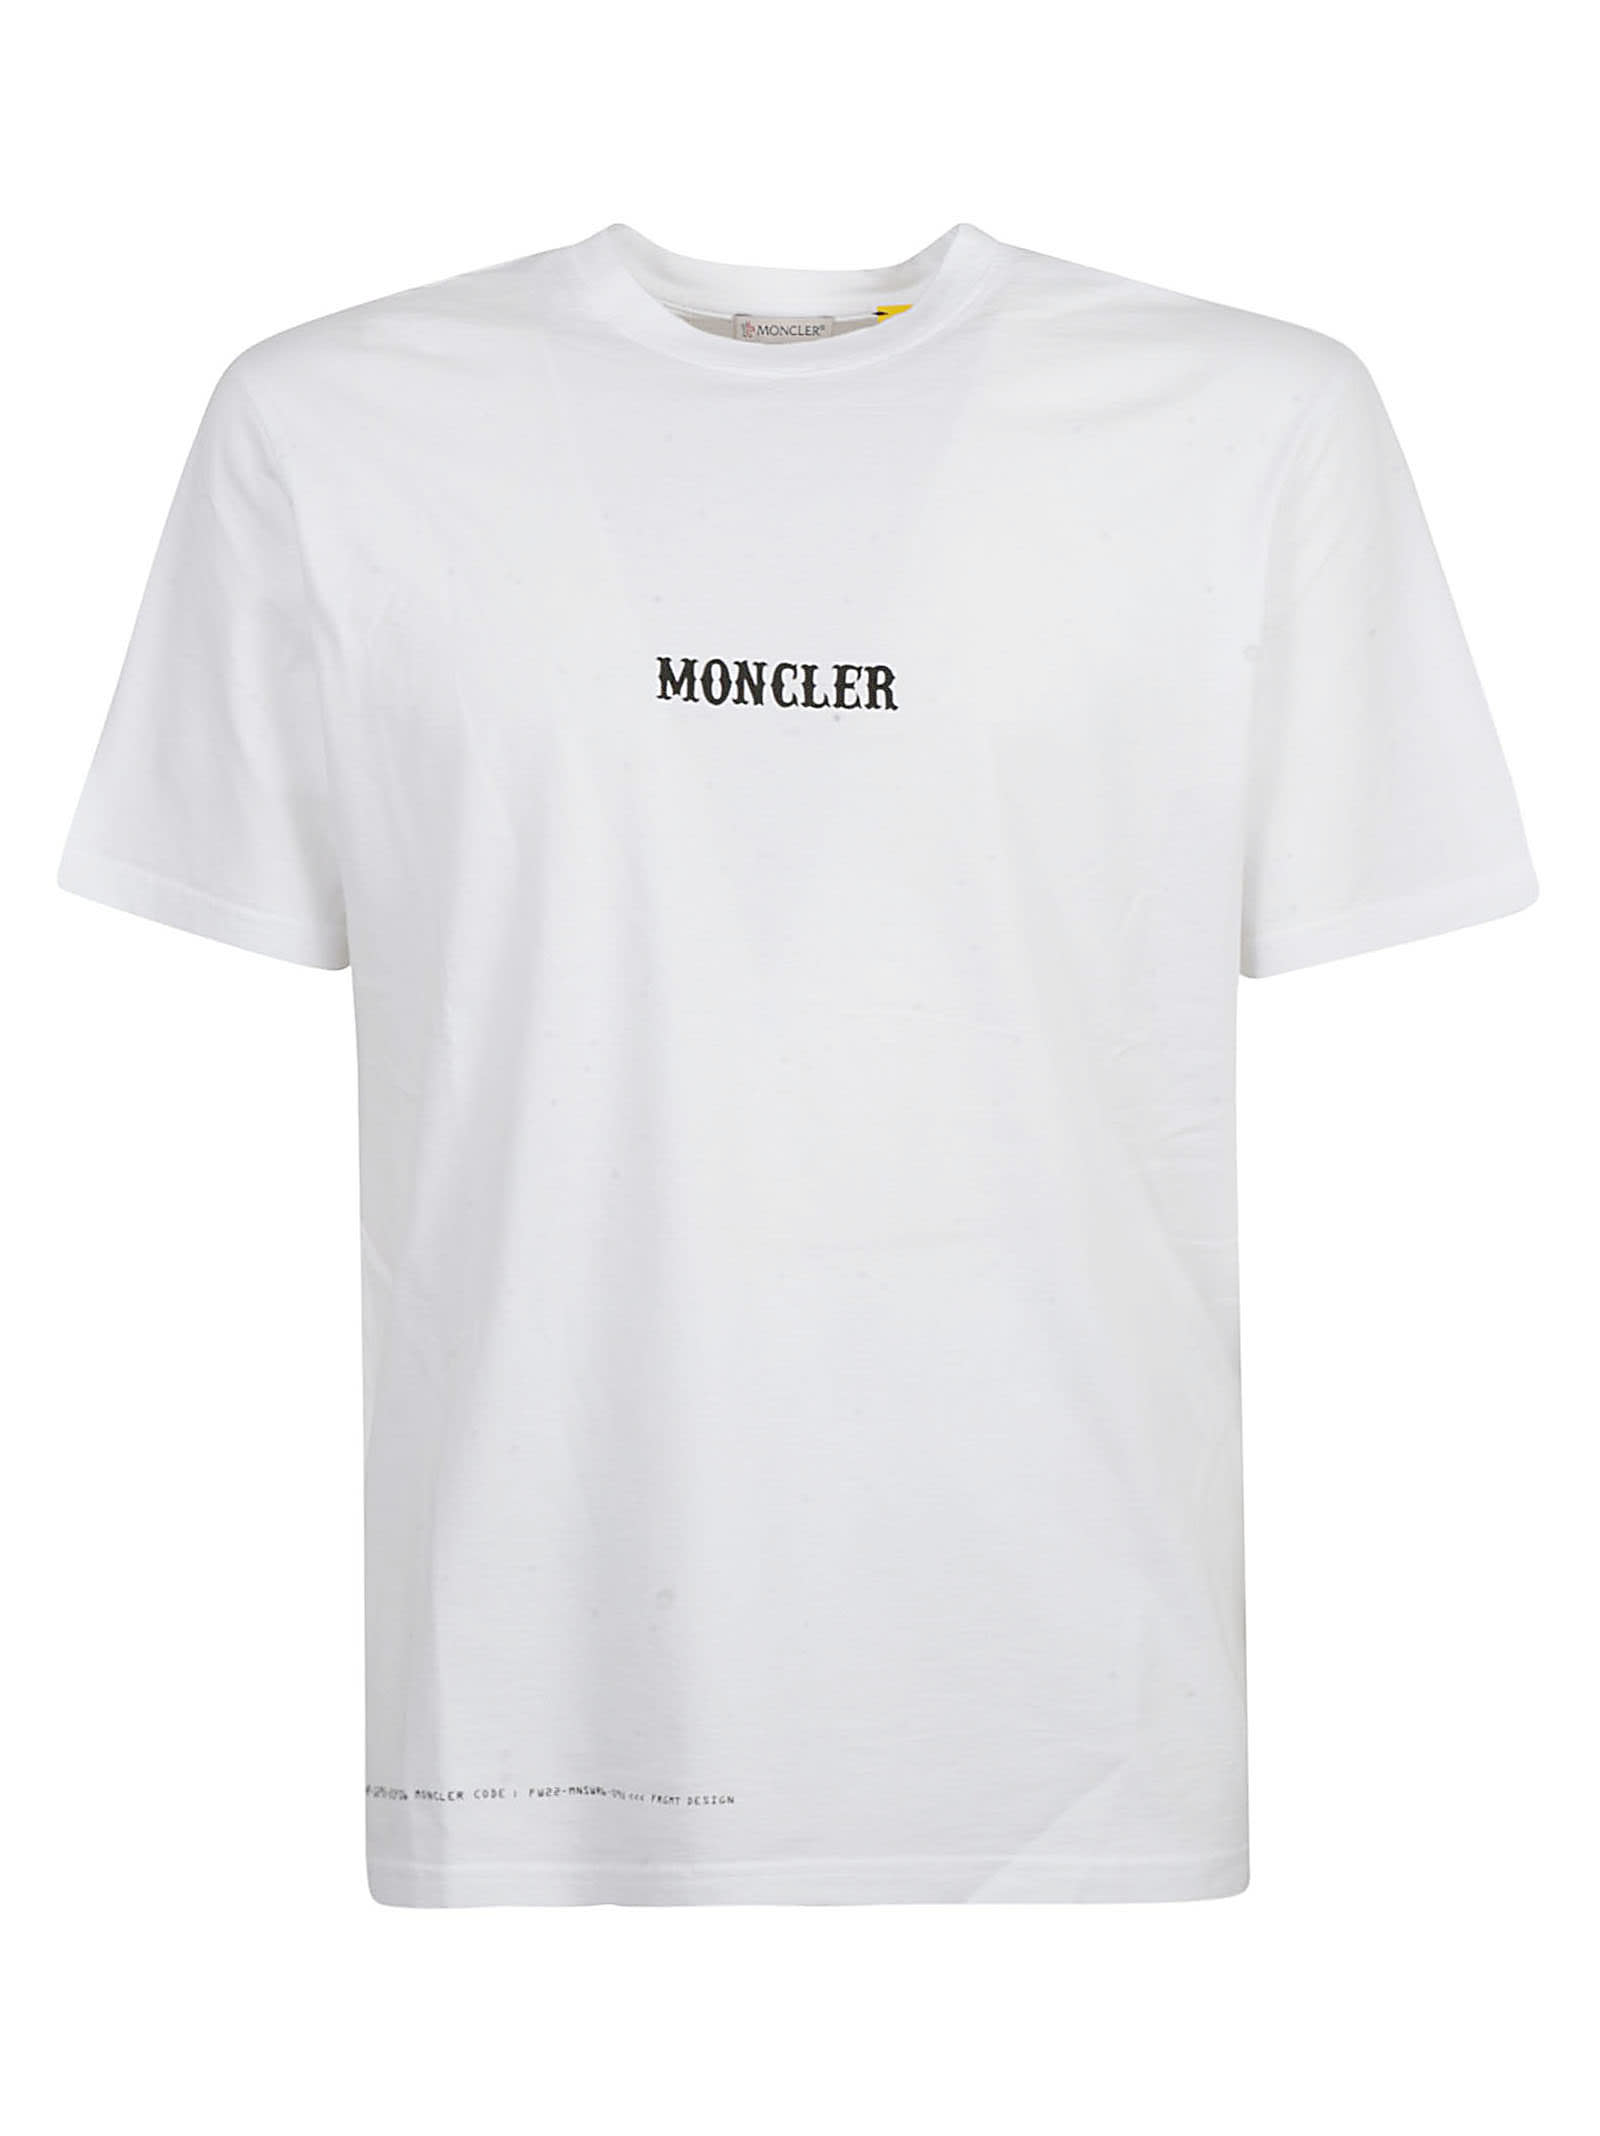 Moncler Genius Ss Circus T-shirt